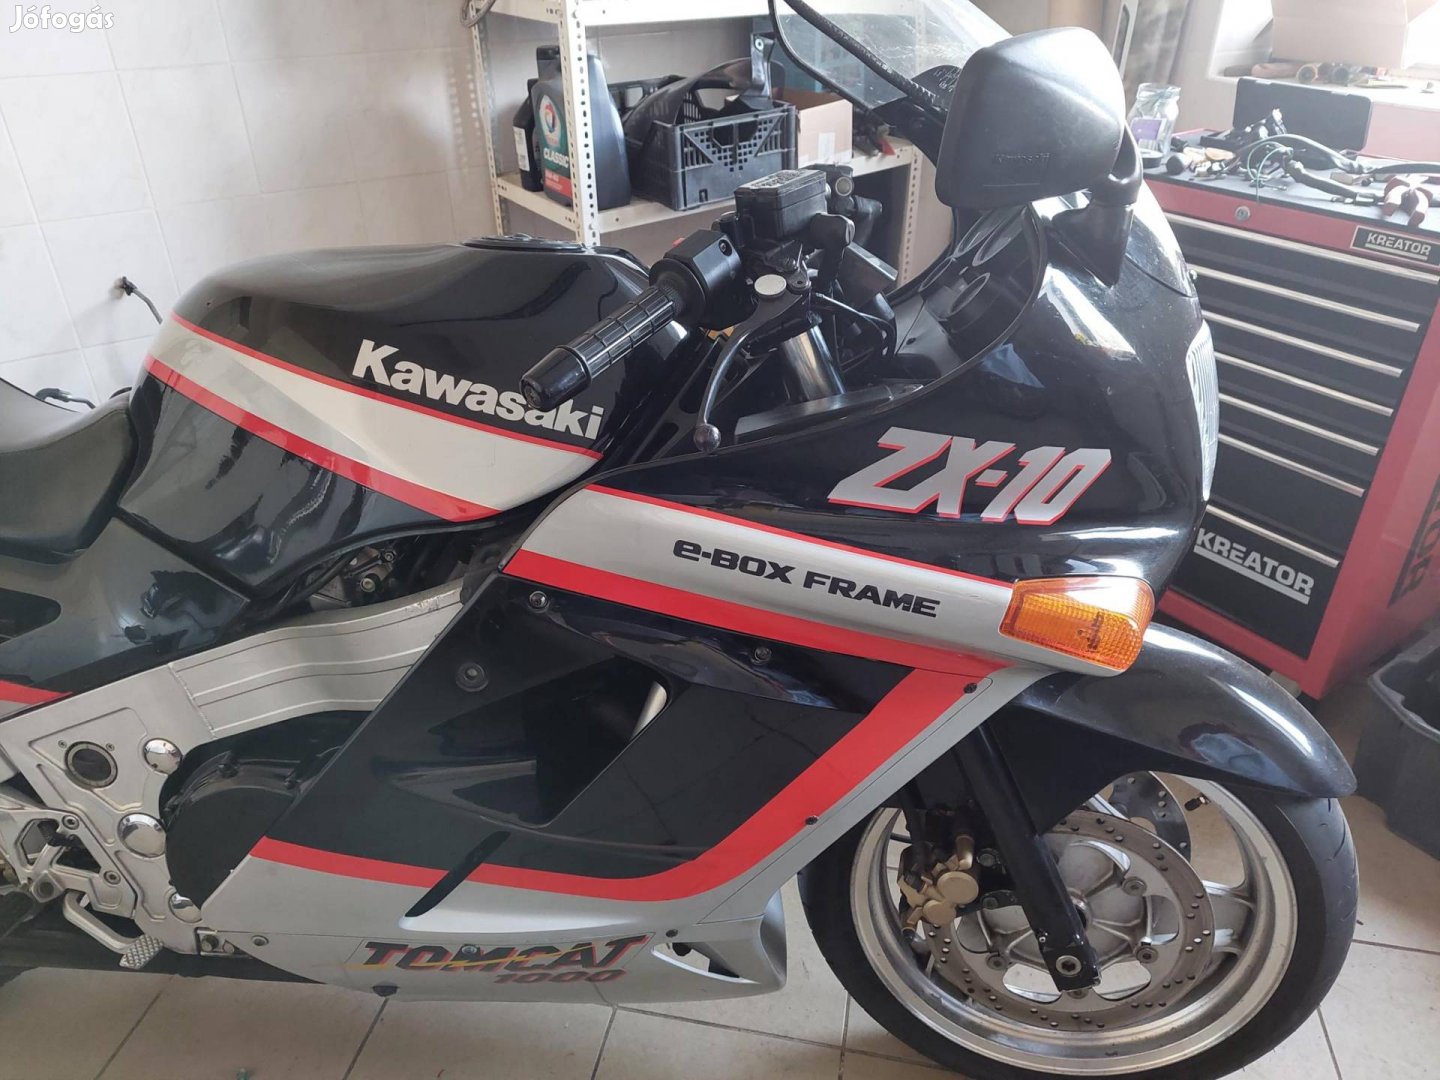 Kawasaki Zx 10